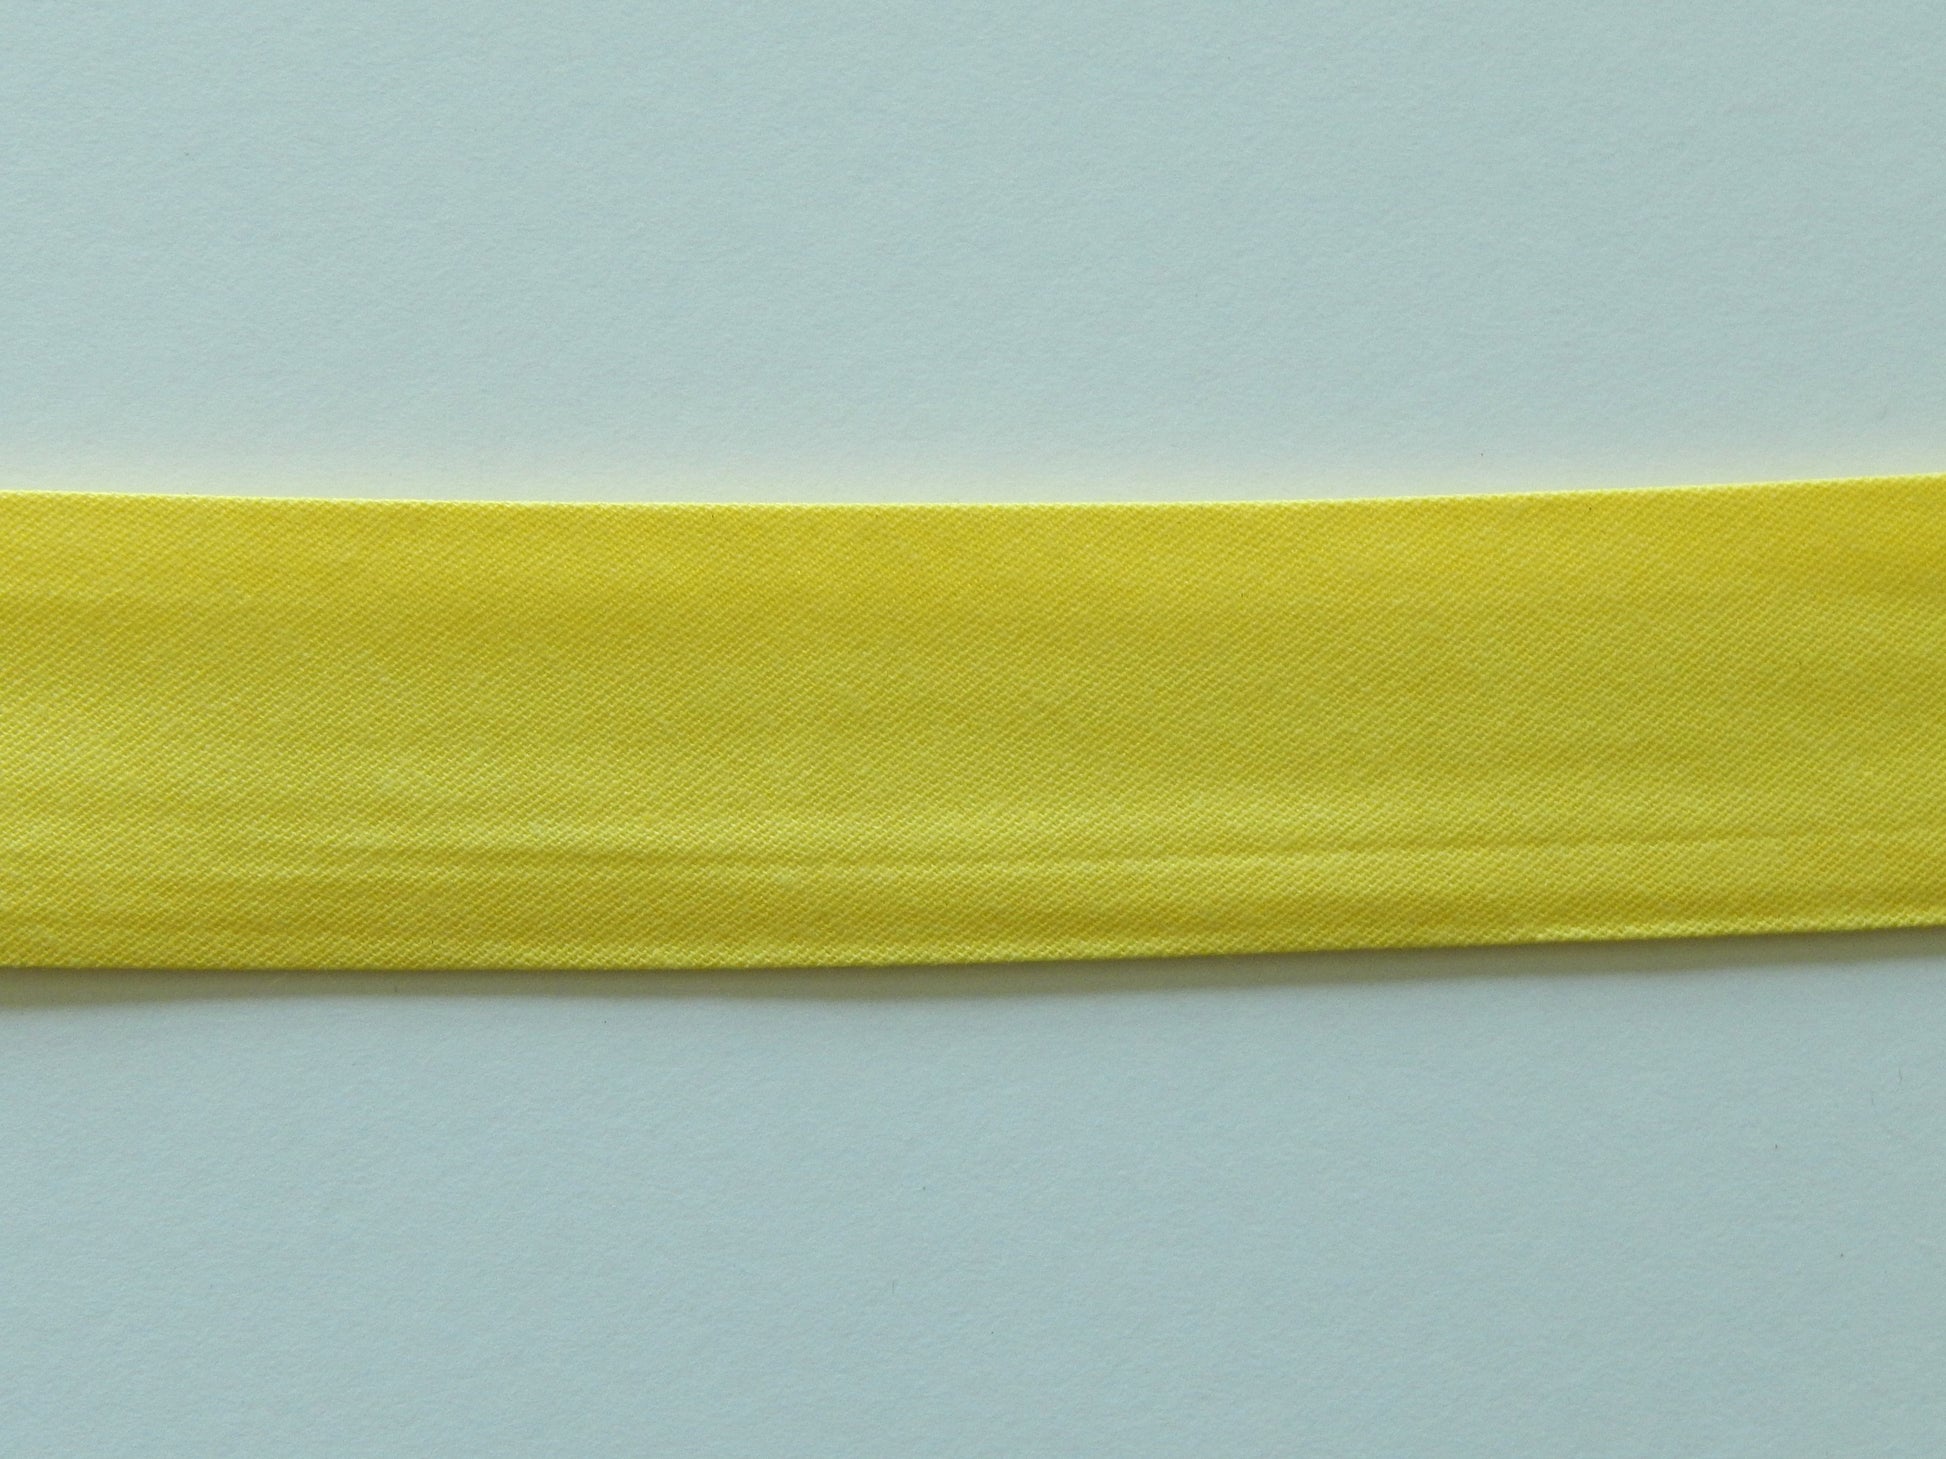 yellow seam tape